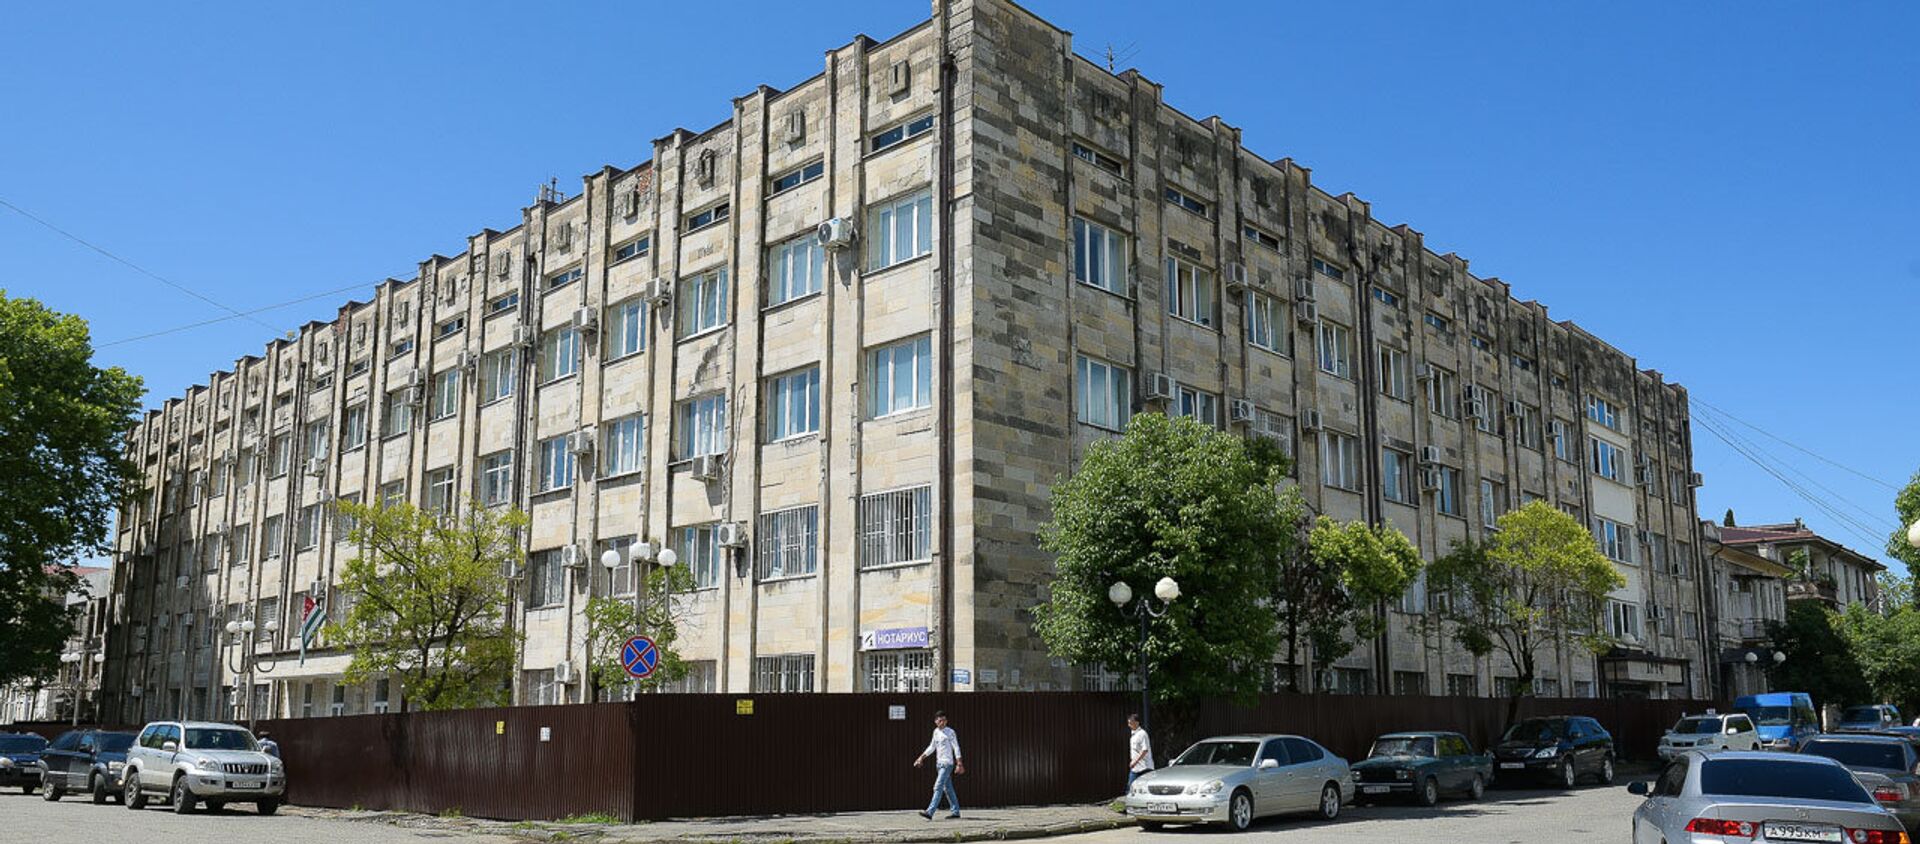 Здание правительства по улице Званба 9 - Sputnik Абхазия, 1920, 17.03.2021